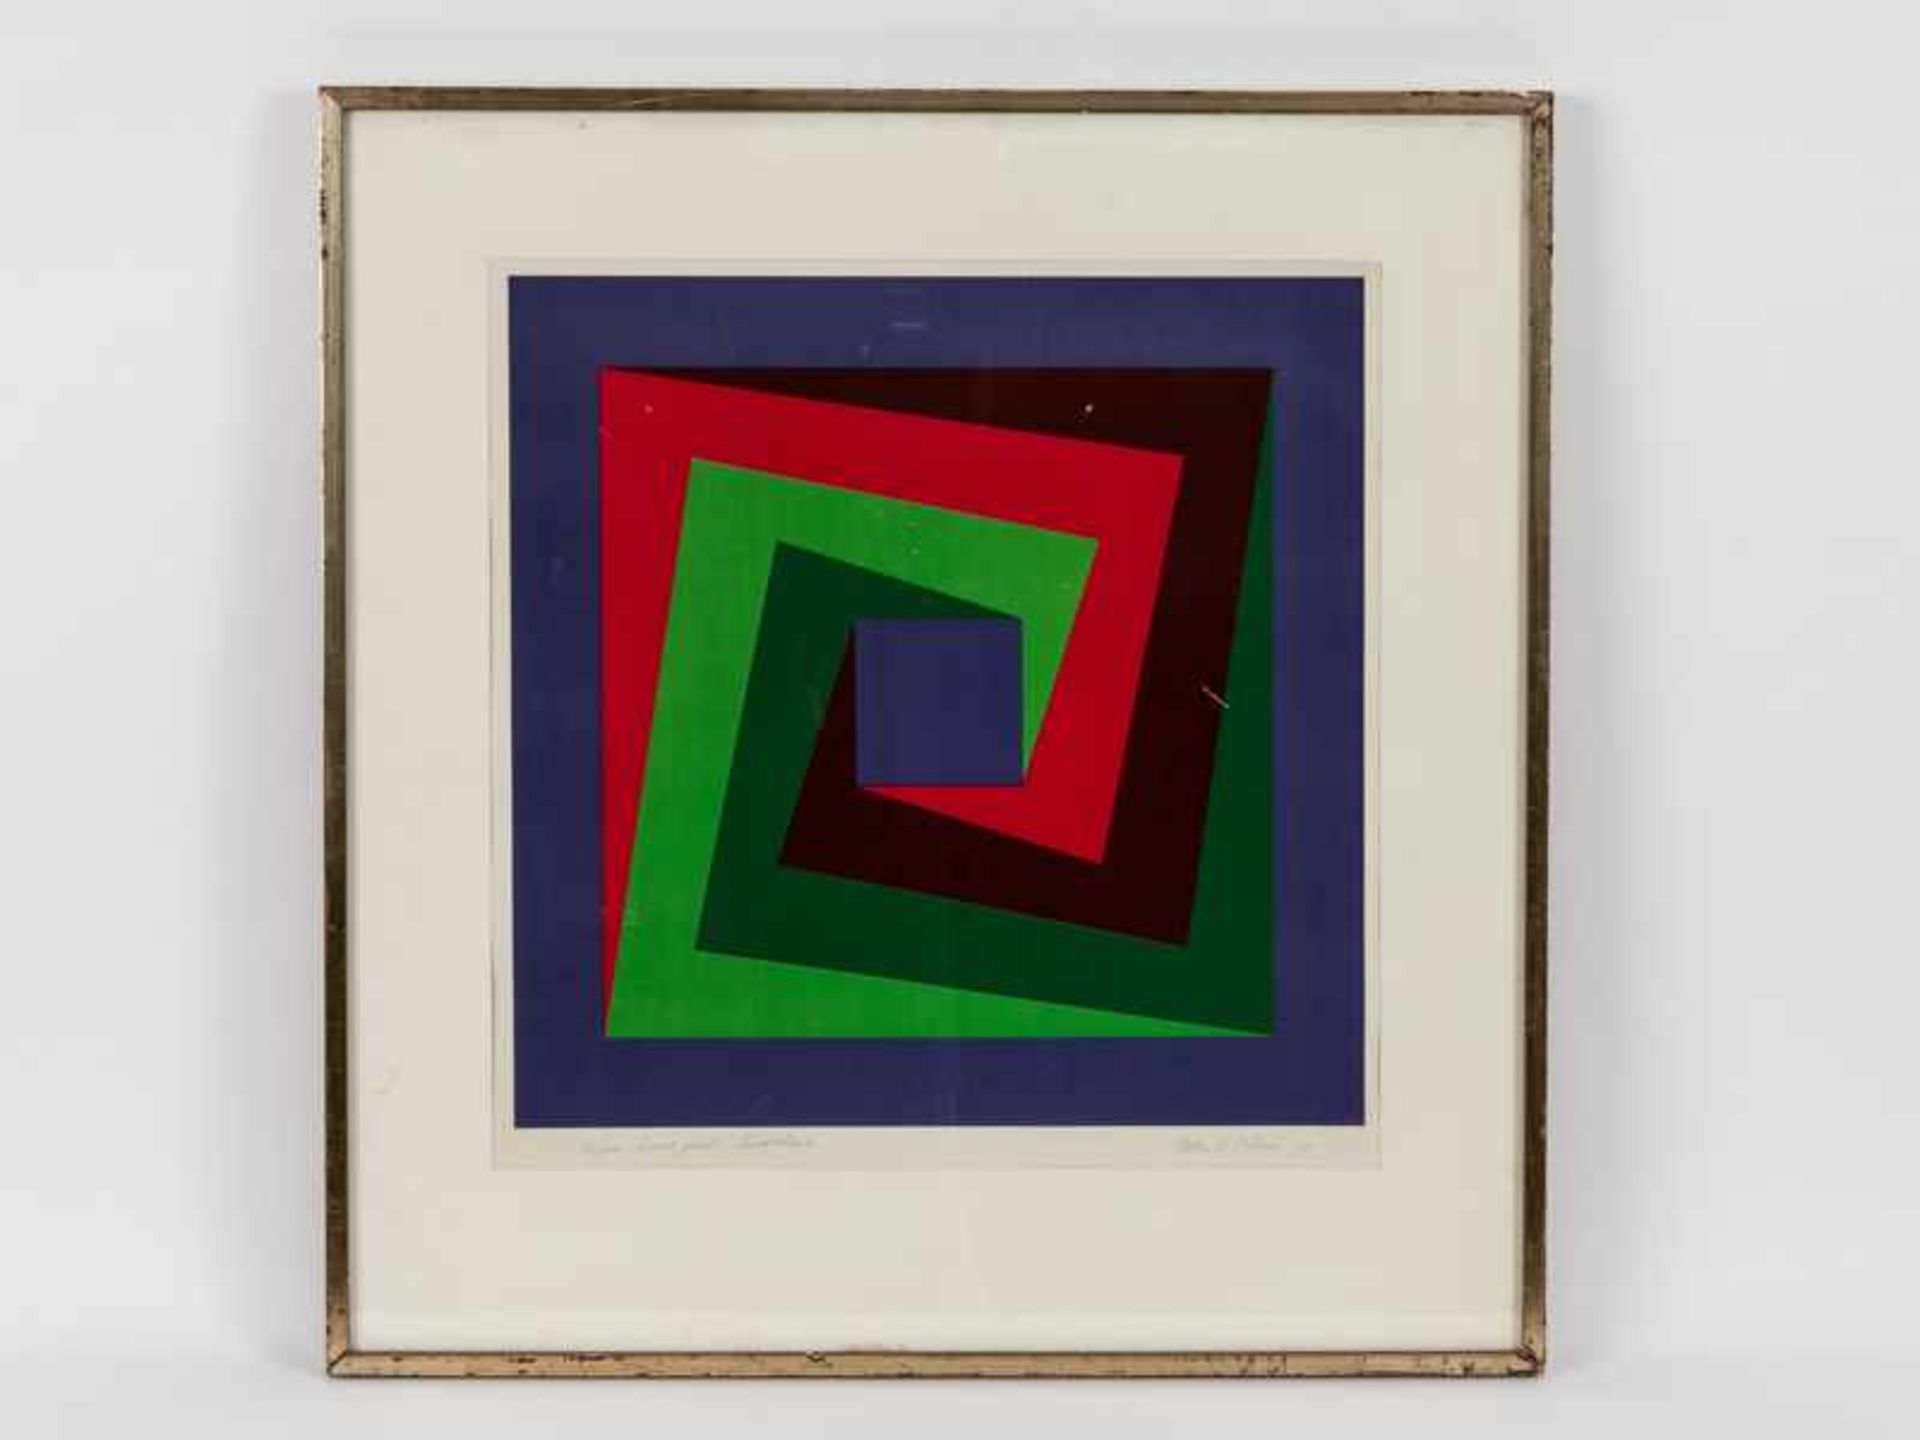 Waser, Felix V. (* 1924). Waser, Felix V. (* 1924). Farbserigraphie, "Colourprint", 1971; unten